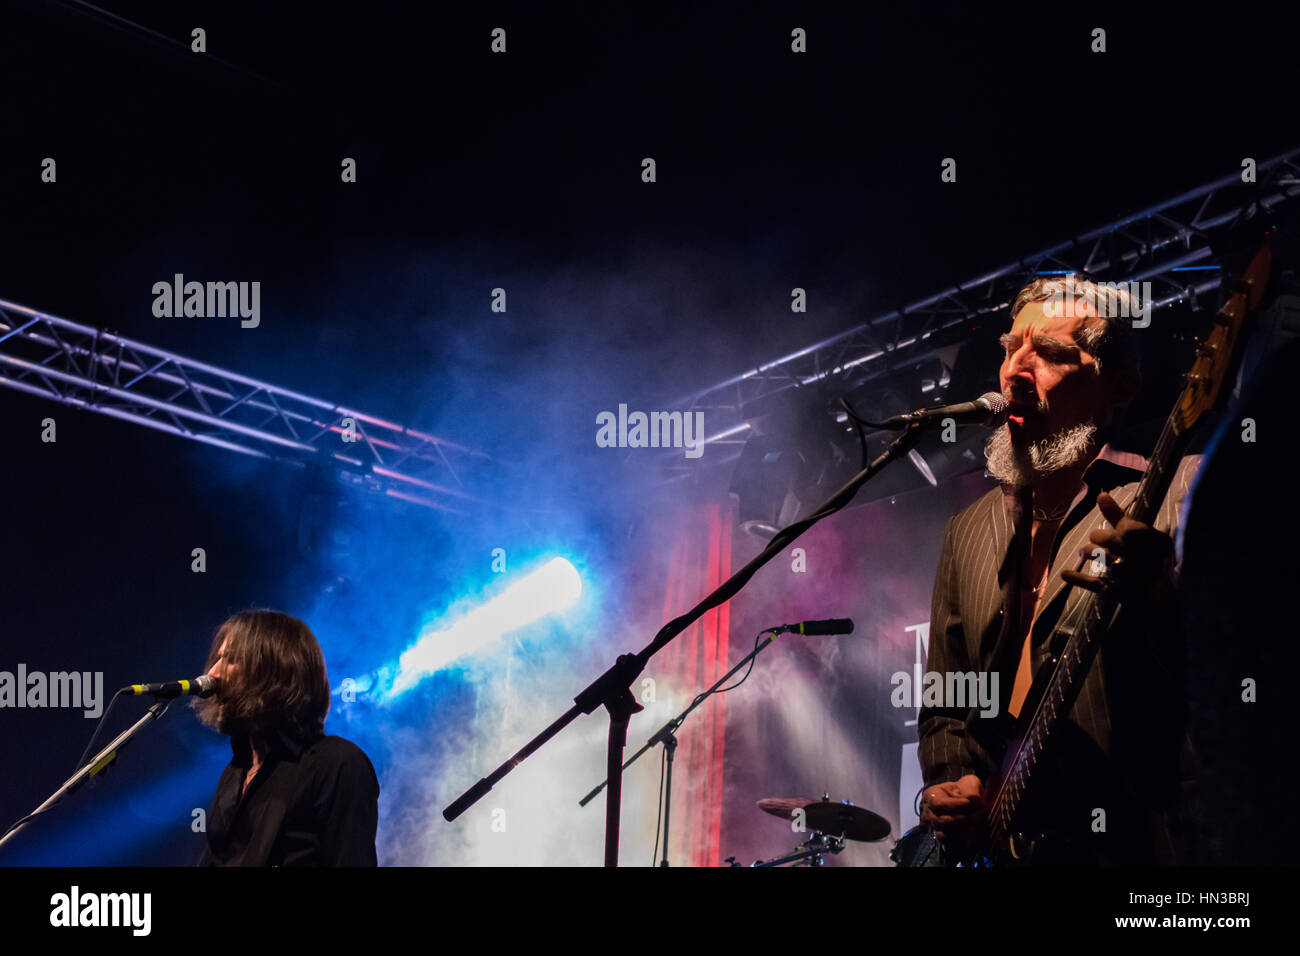 Bergamo, Italien vom 27. Januar 2017. Italienische indie rock Band Marlene Kuntz (Onorate il vile Tour) führen Sie im Music Club "ruso'. Brambilla Simone Foto Stockfoto